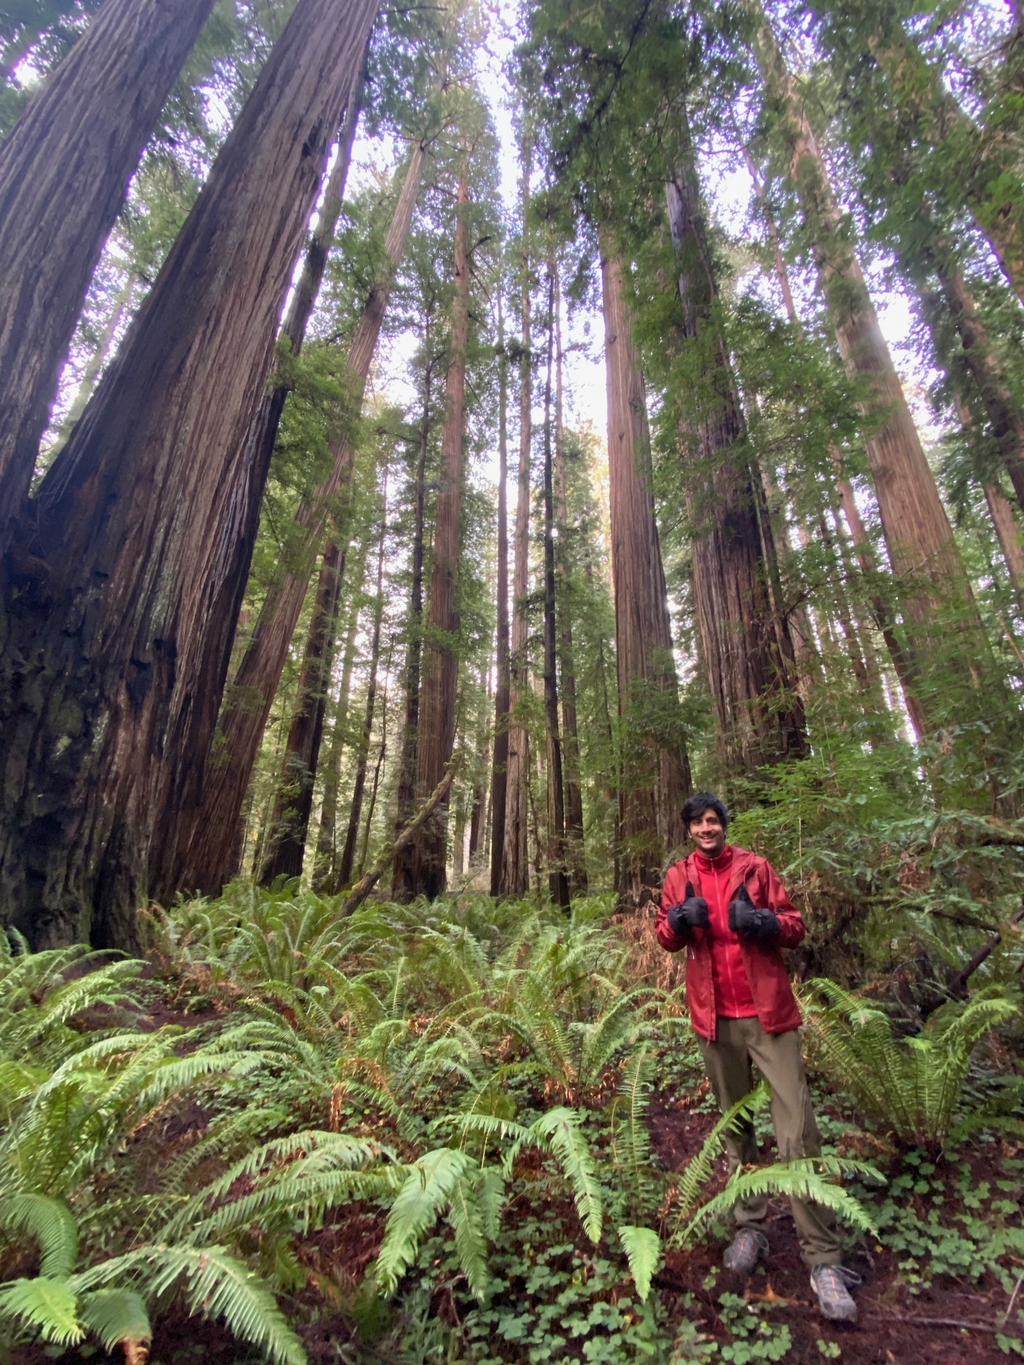 Ravishing Redwoods. MemExp Blog. Rohan Goel